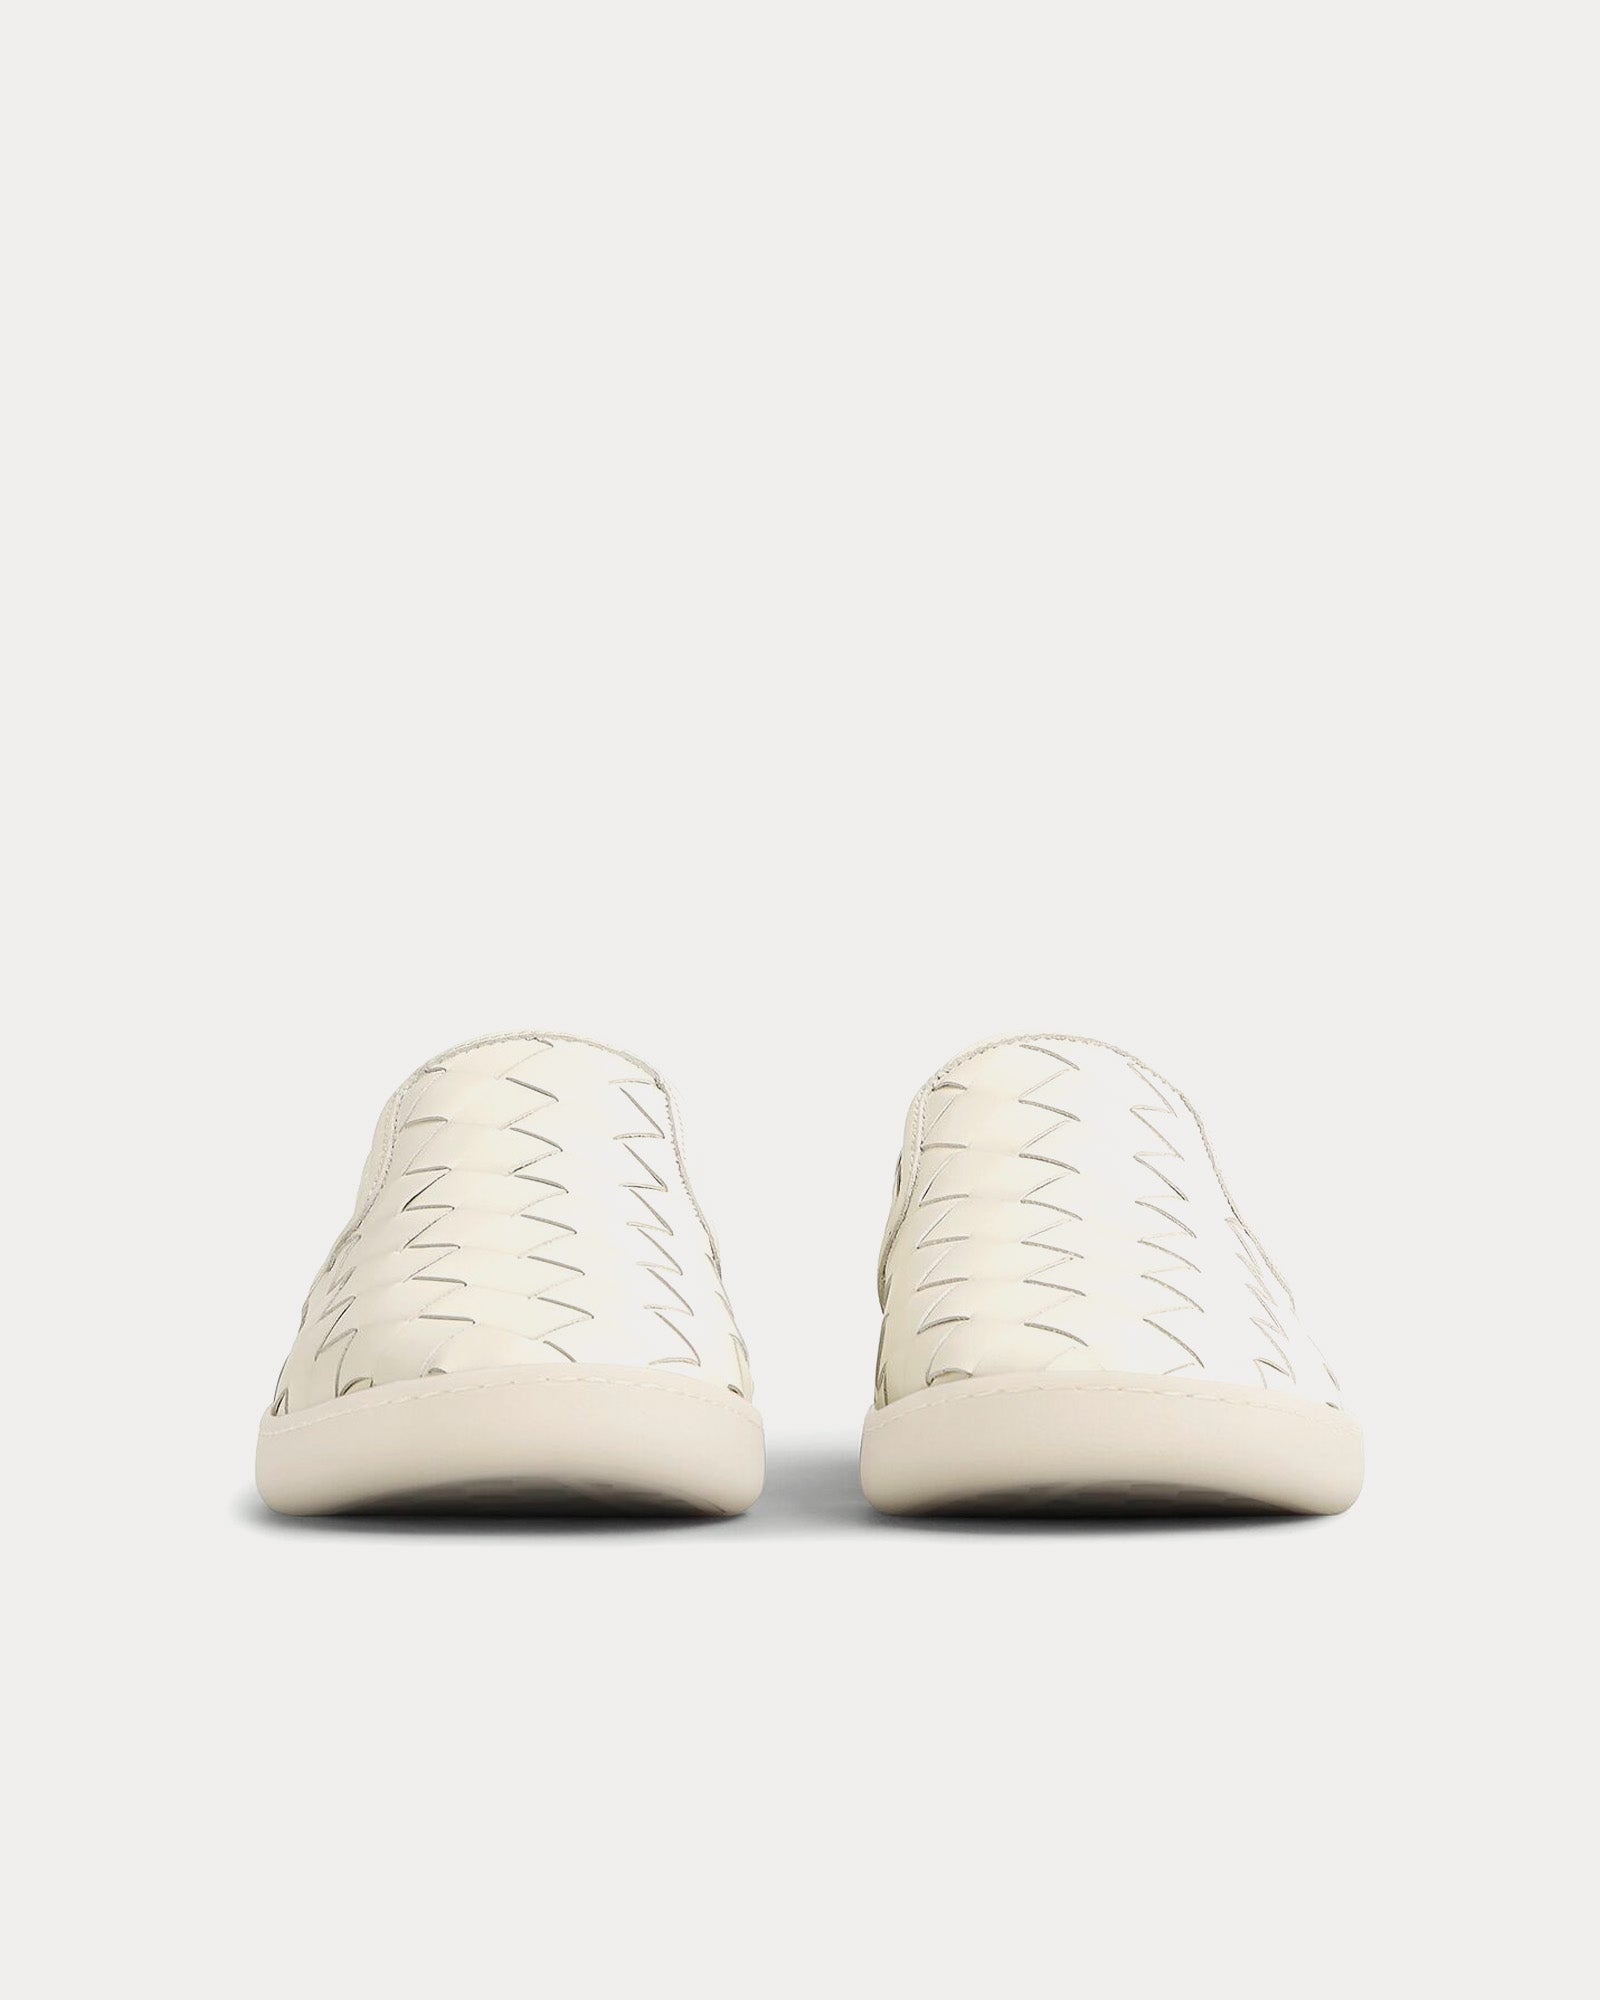 Bottega Veneta - Sawyer Intrecciato White Slip On Sneakers